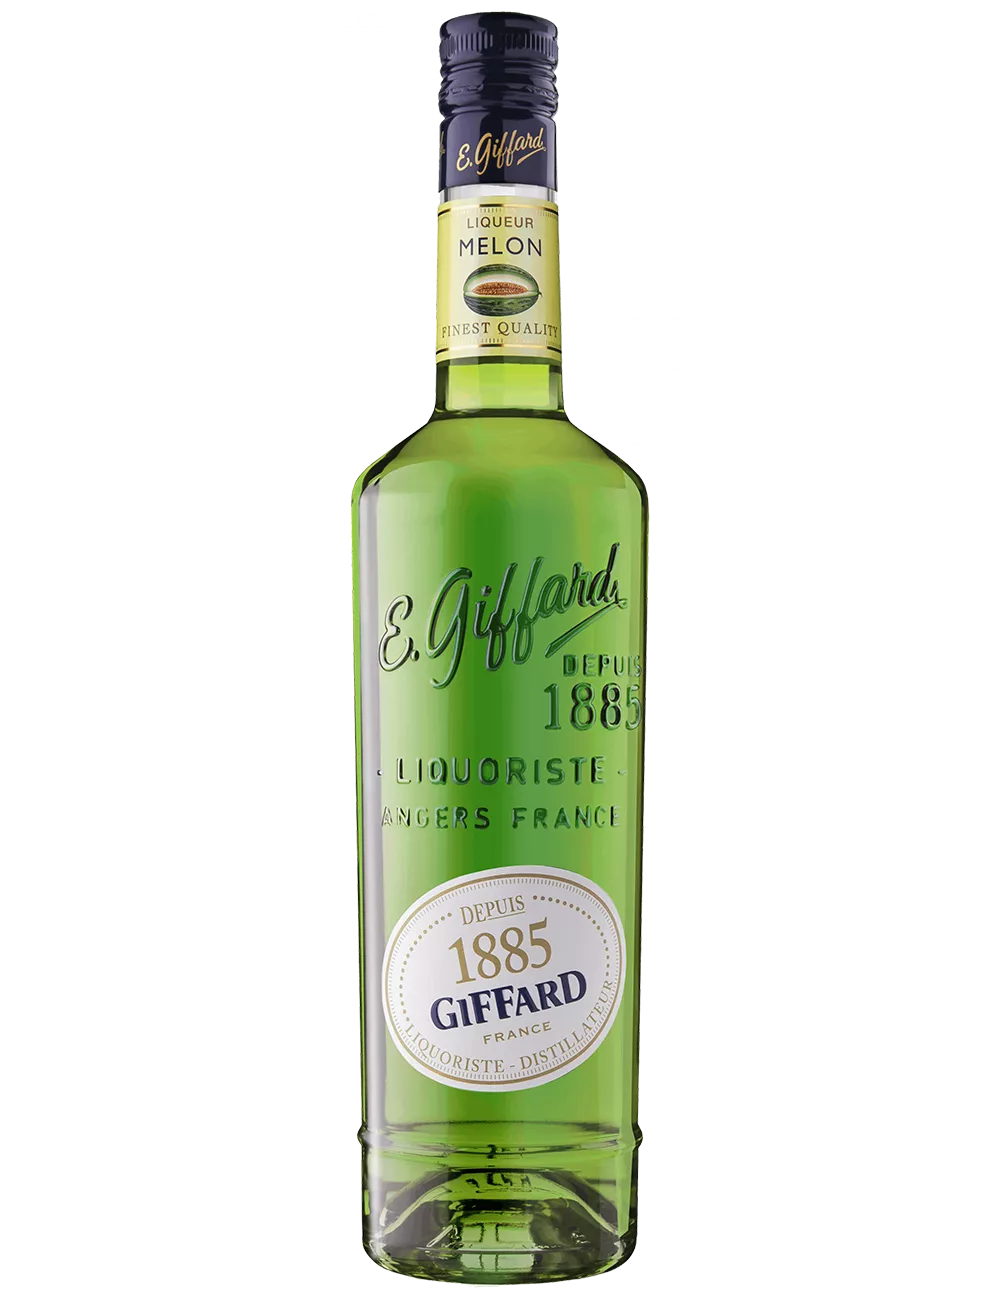 Giffard - Melon Vert - Liqueur